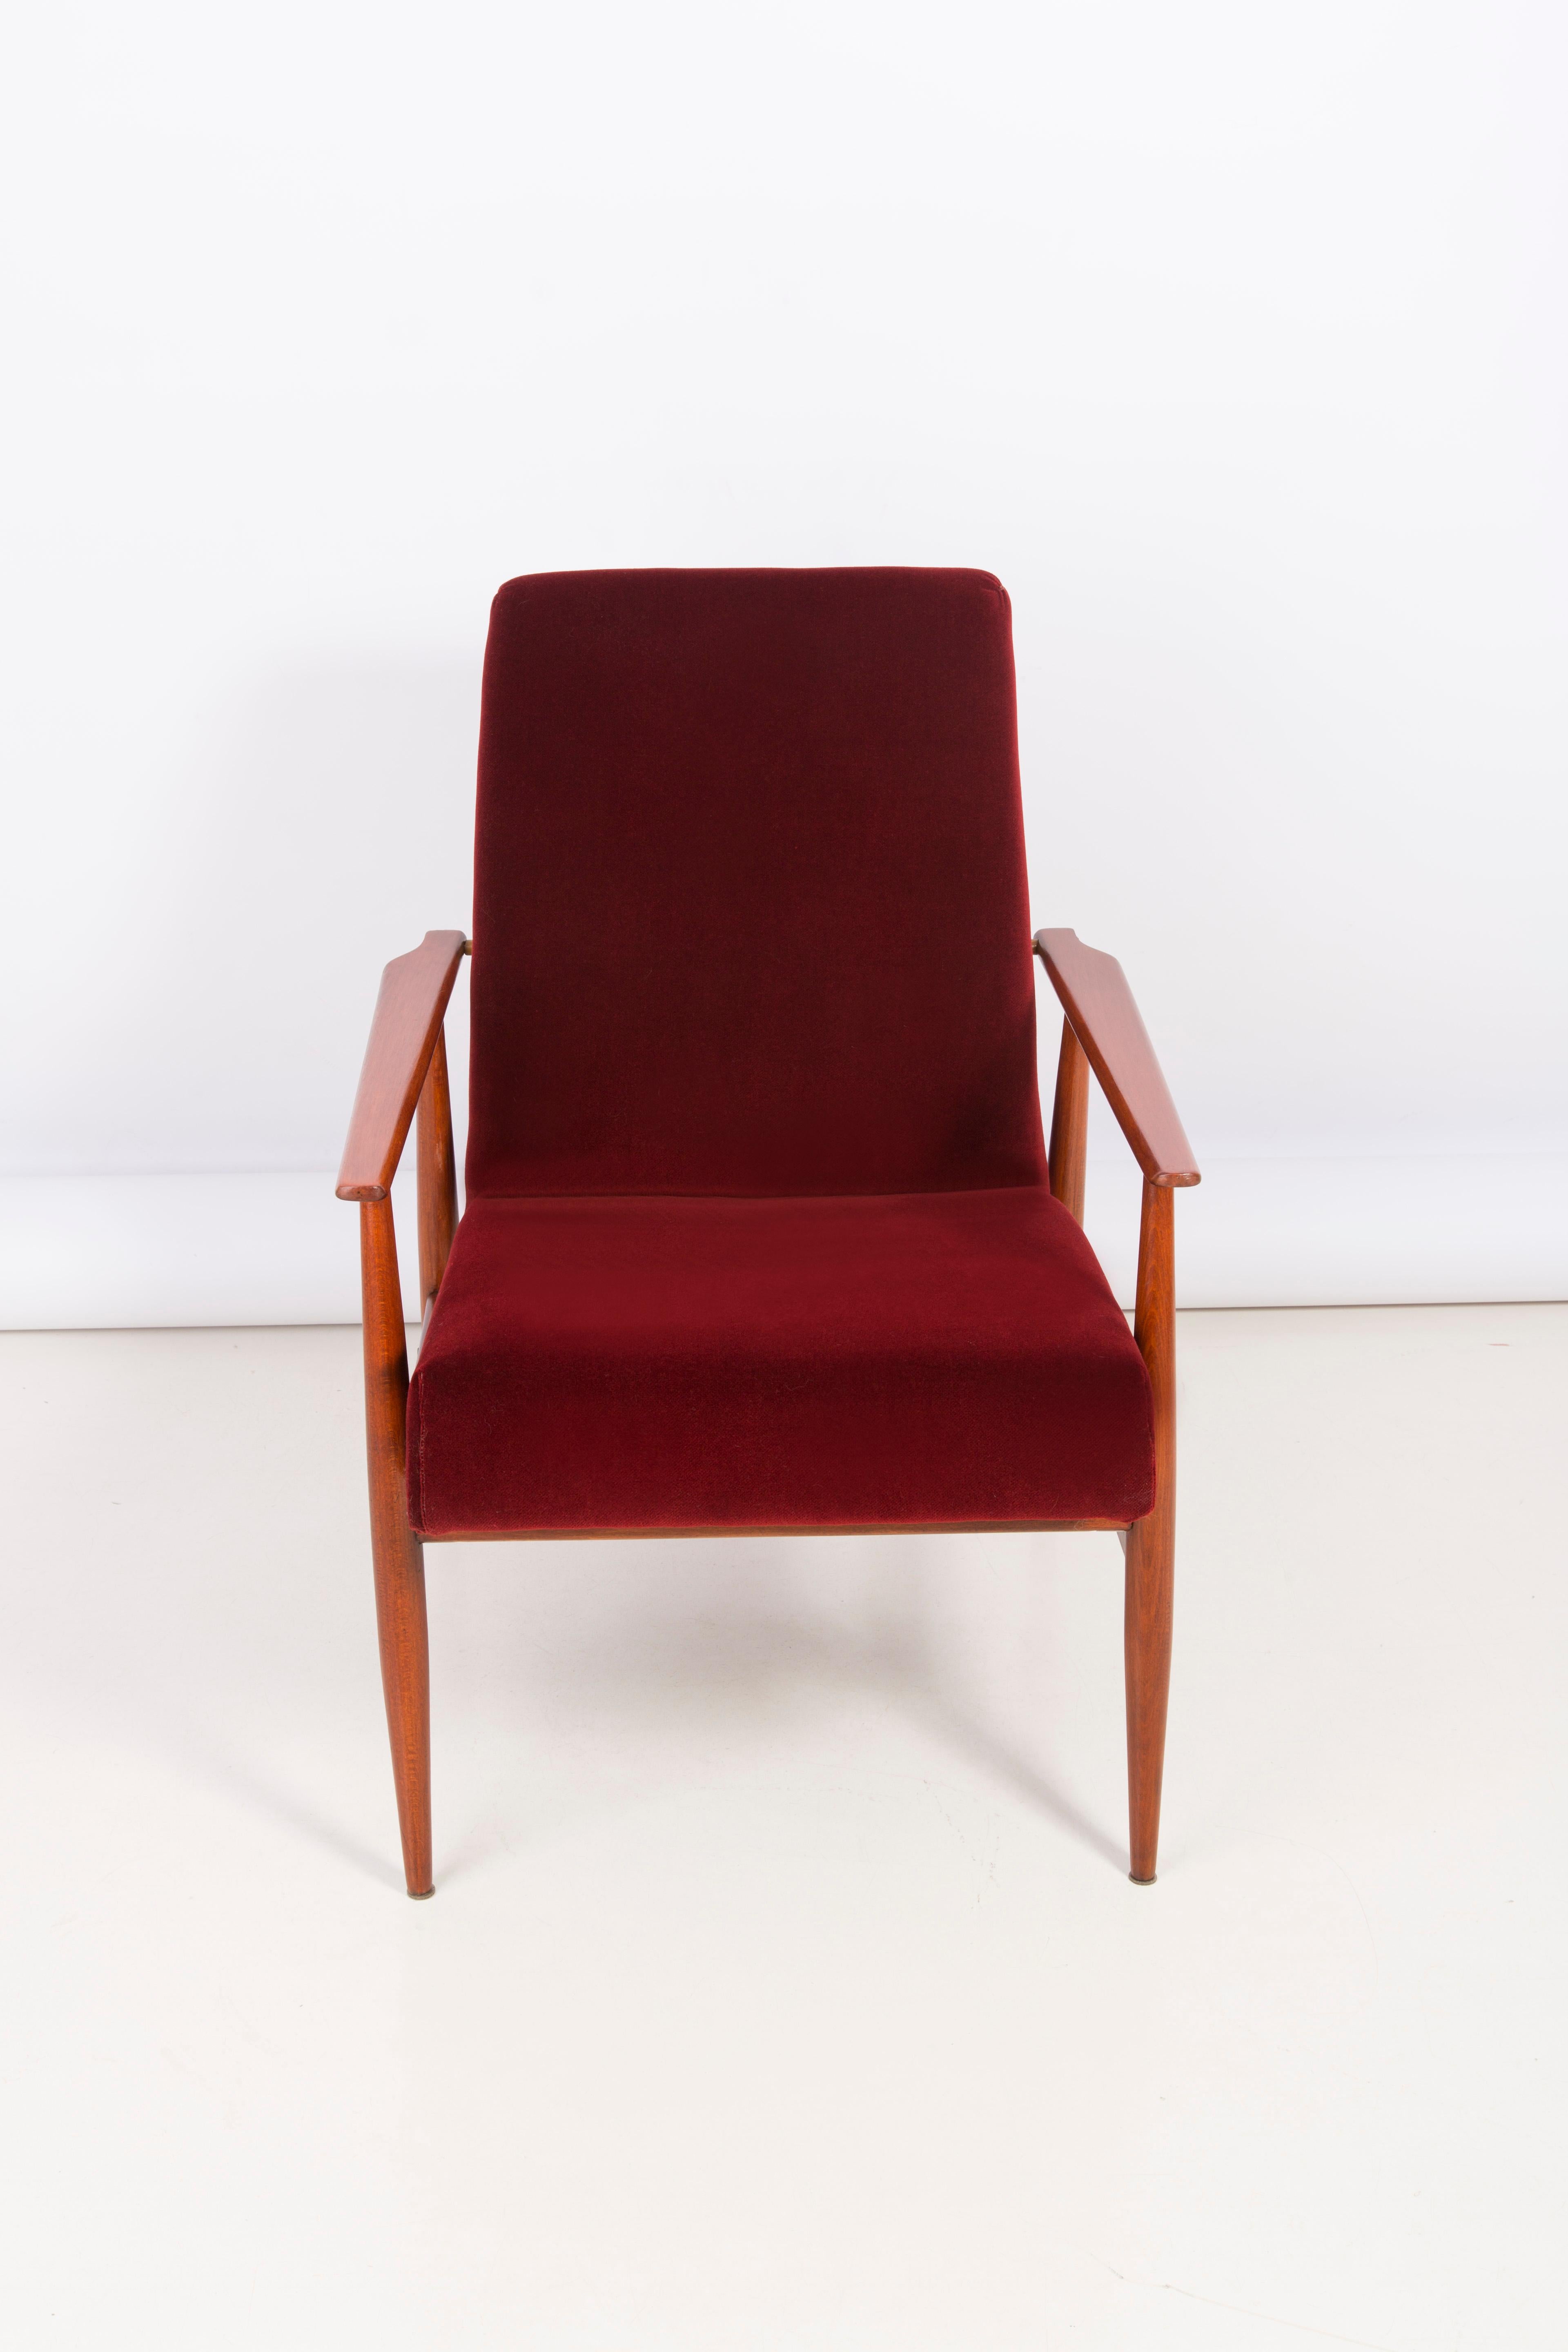 20th Century Burgundy Dark Red Dante Armchair, H. Lis, 1960s In Excellent Condition For Sale In 05-080 Hornowek, PL